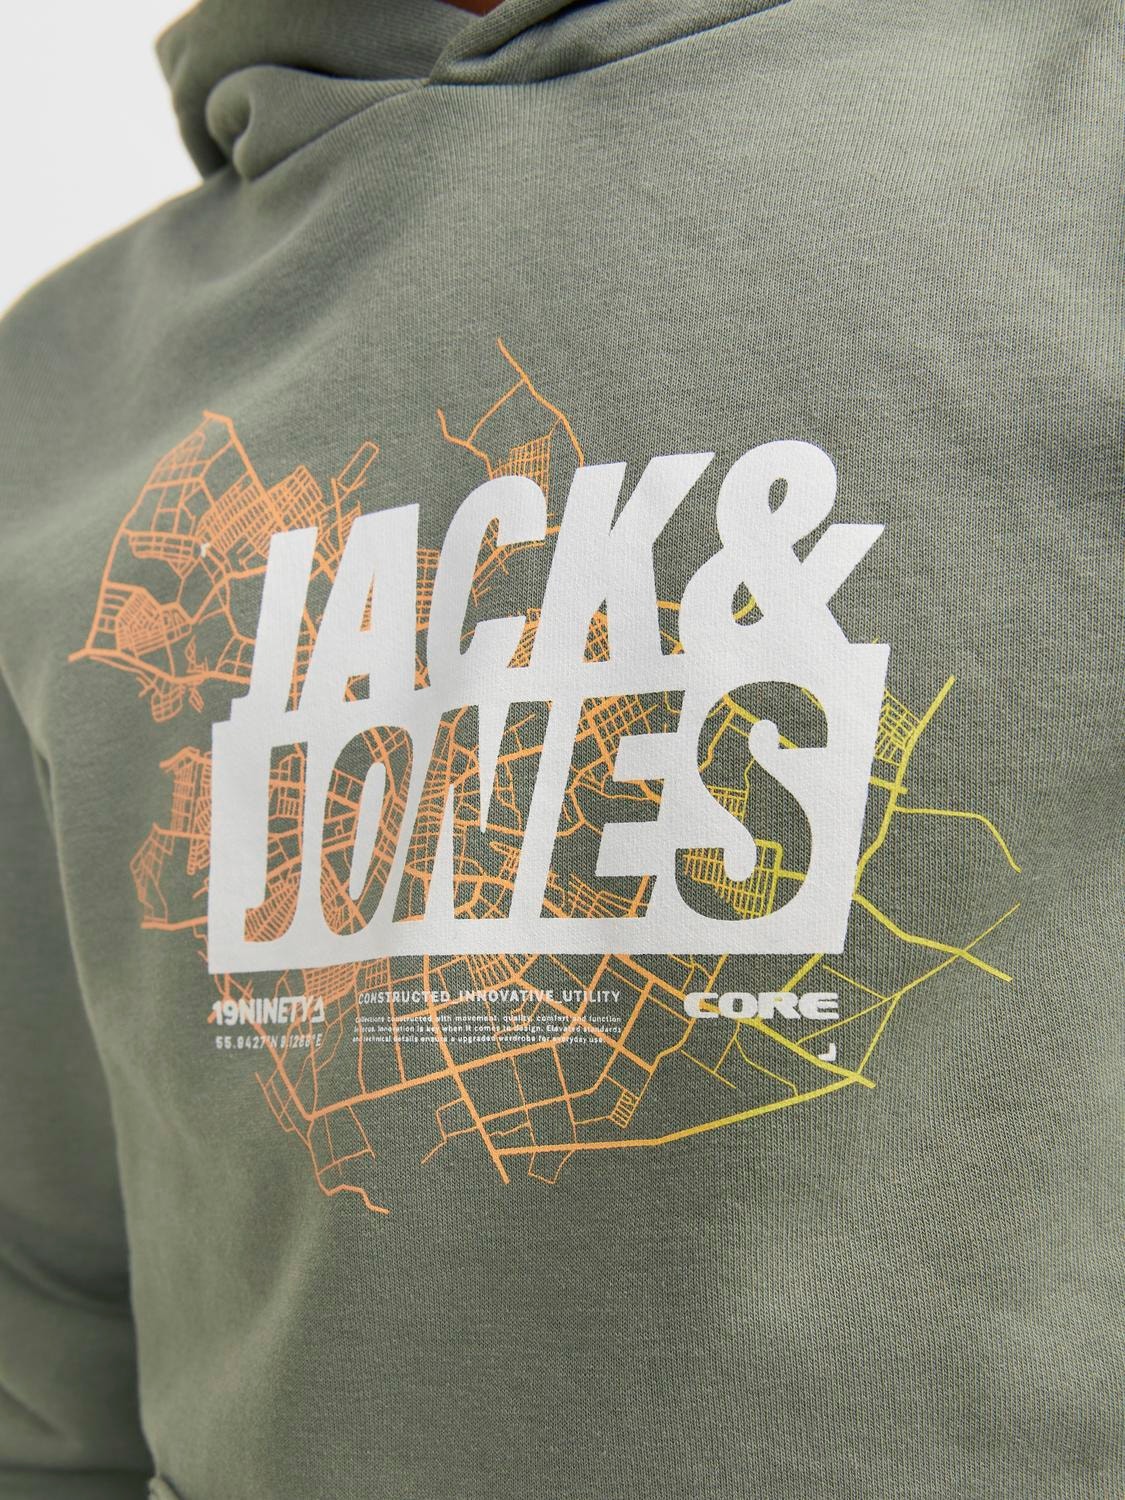 Jack & Jones Printed Hoodie For boys -Agave Green - 12253990